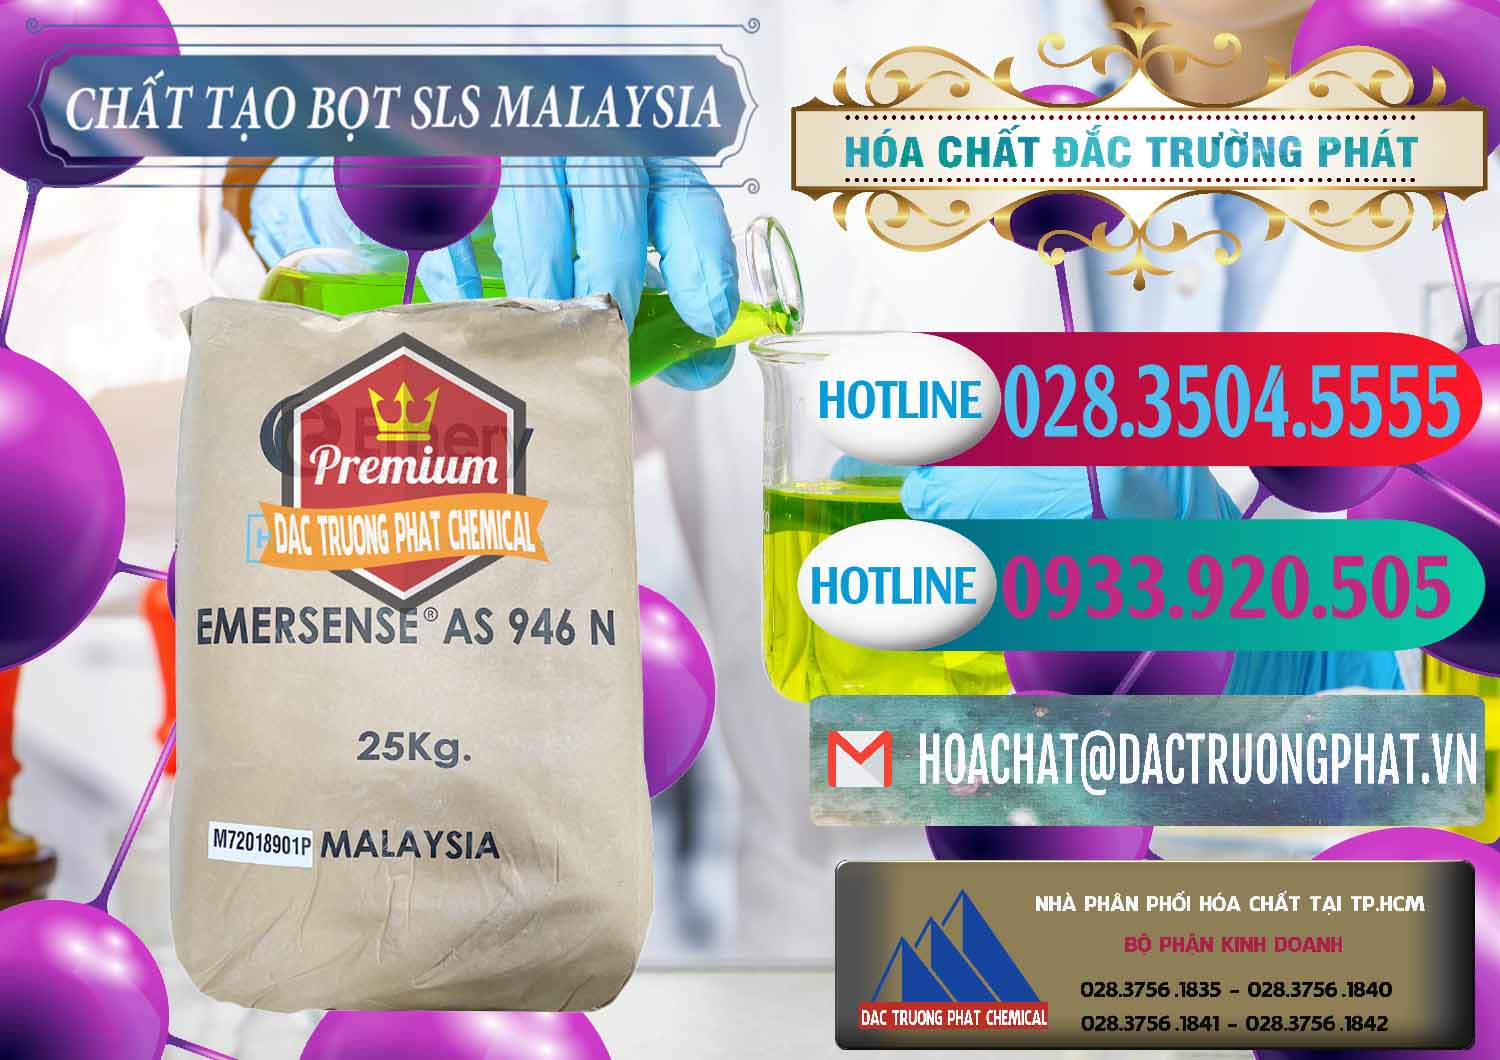 Công ty chuyên bán & cung cấp Chất Tạo Bọt SLS Emery - Emersense AS 946N Mã Lai Malaysia - 0423 - Đơn vị chuyên cung cấp - nhập khẩu hóa chất tại TP.HCM - truongphat.vn